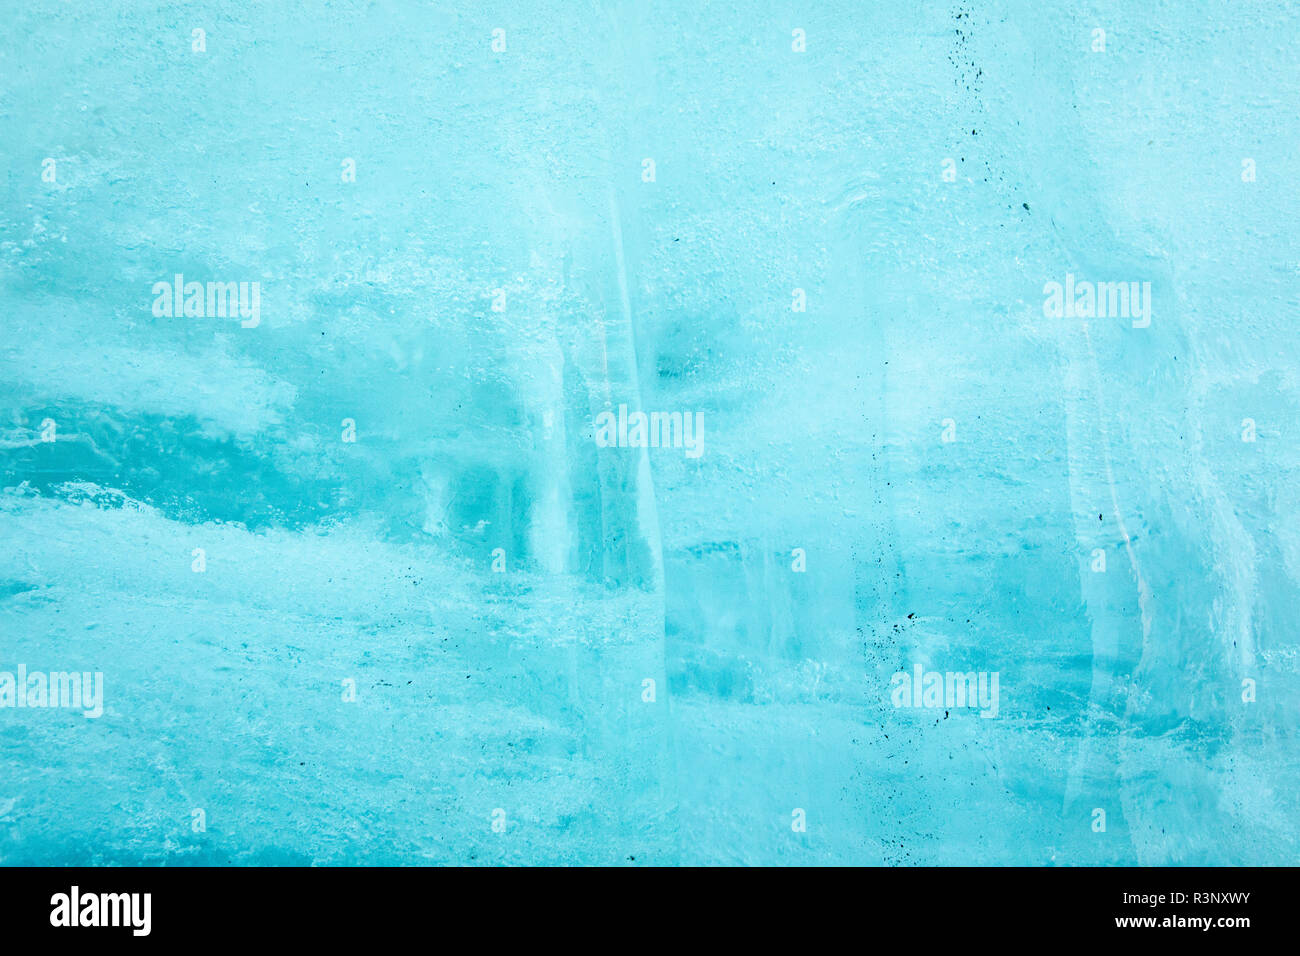 Le bolle di aria nel ghiaccio blu all'interno del tunnel di ghiaccio in corrispondenza della bocca del ghiacciaio del Rodano. Enormi fogli con coperte di vello coprire un tunnel di ghiaccio in corrispondenza della bocca del ghiacciaio del Rodano in Svizzera. Dopo un inverno con un record di quantità di neve, la maggior parte di esso era andato quando questa immagine è stata presa il 14 luglio 2018, esponendo il ghiaccio più scure. Mentre la neve è un brillante riflettore dell'energia dal sole, il ghiaccio più scura assorbe l'energia invece, accelerando la fusione del ghiacciaio. Il colore e le tenebre del ghiacciaio variano in tutto il mondo, a seconda dell'accumulo di inquinamento, età di ghiaccio, particelle prelevate Foto Stock